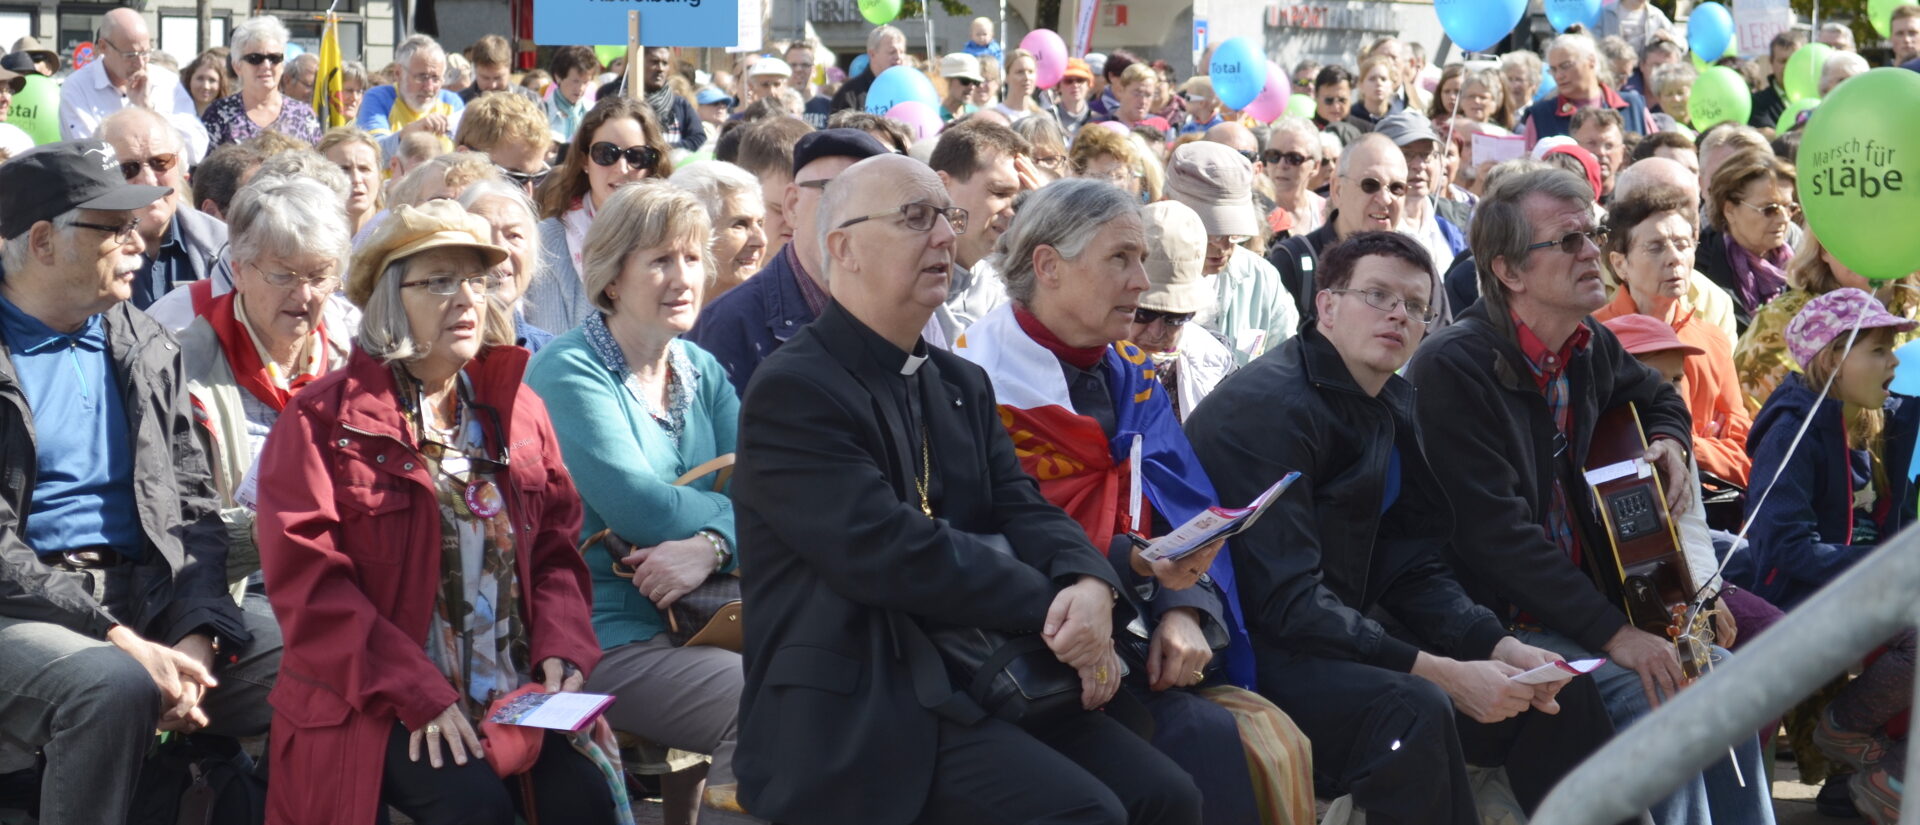 Des participants à la "Marche pour la Vie" 2015 à Zurich, avec au premier plan Mgr Marian Eleganti, ancien évêque auxiliaire de Coire | © Regula Pfeifer